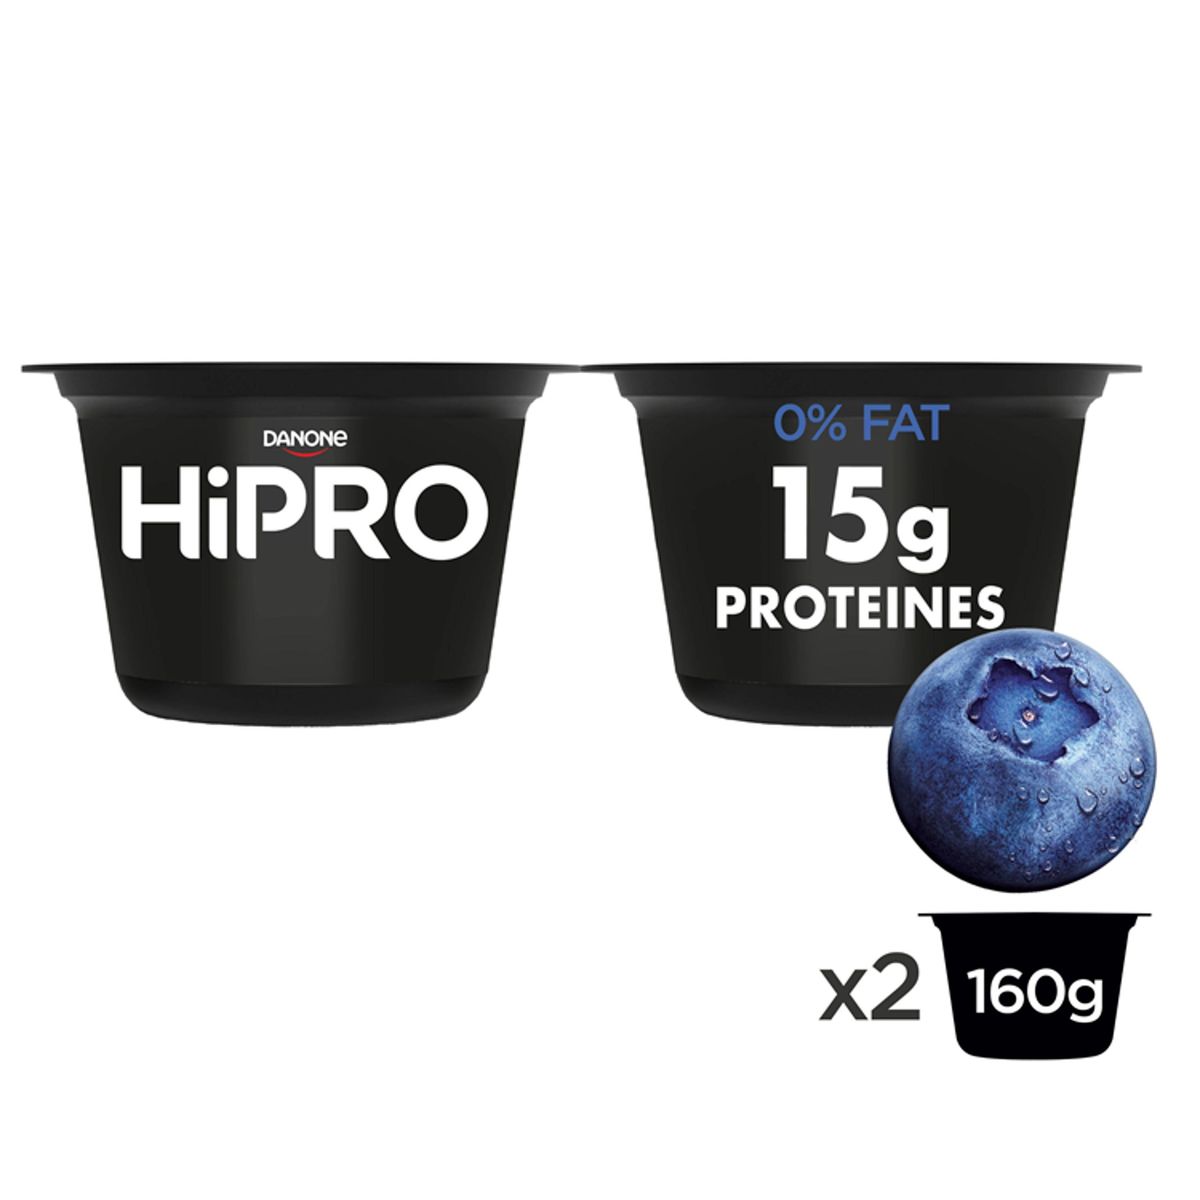 HiPRO Melkproducten 15 g Bosbessmaak Proteïnes 0% vet 2x 160g